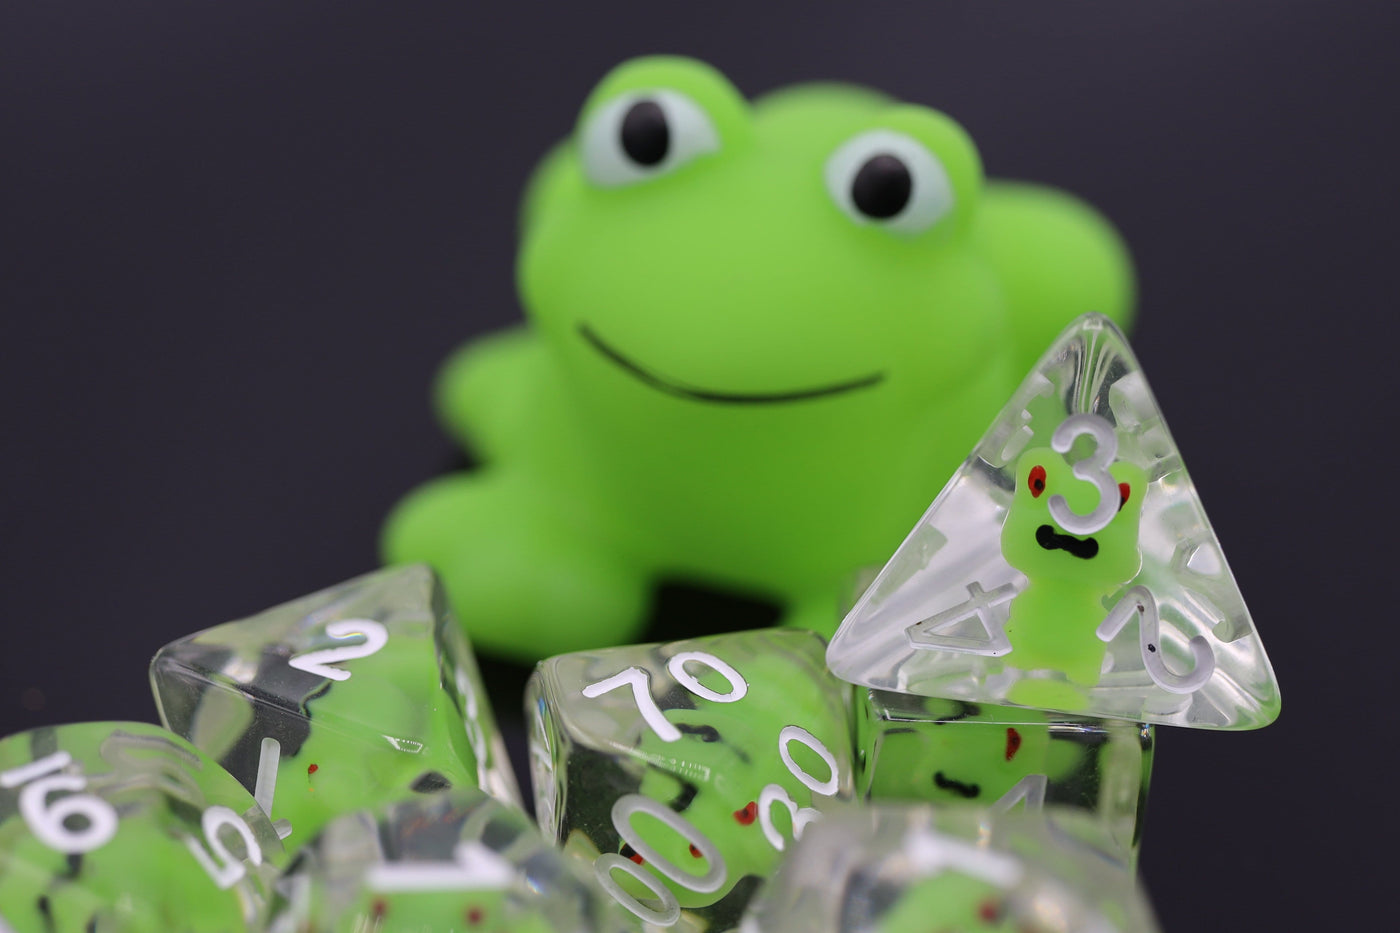 Frog RPG Dice Set Plastic Dice Foam Brain Games